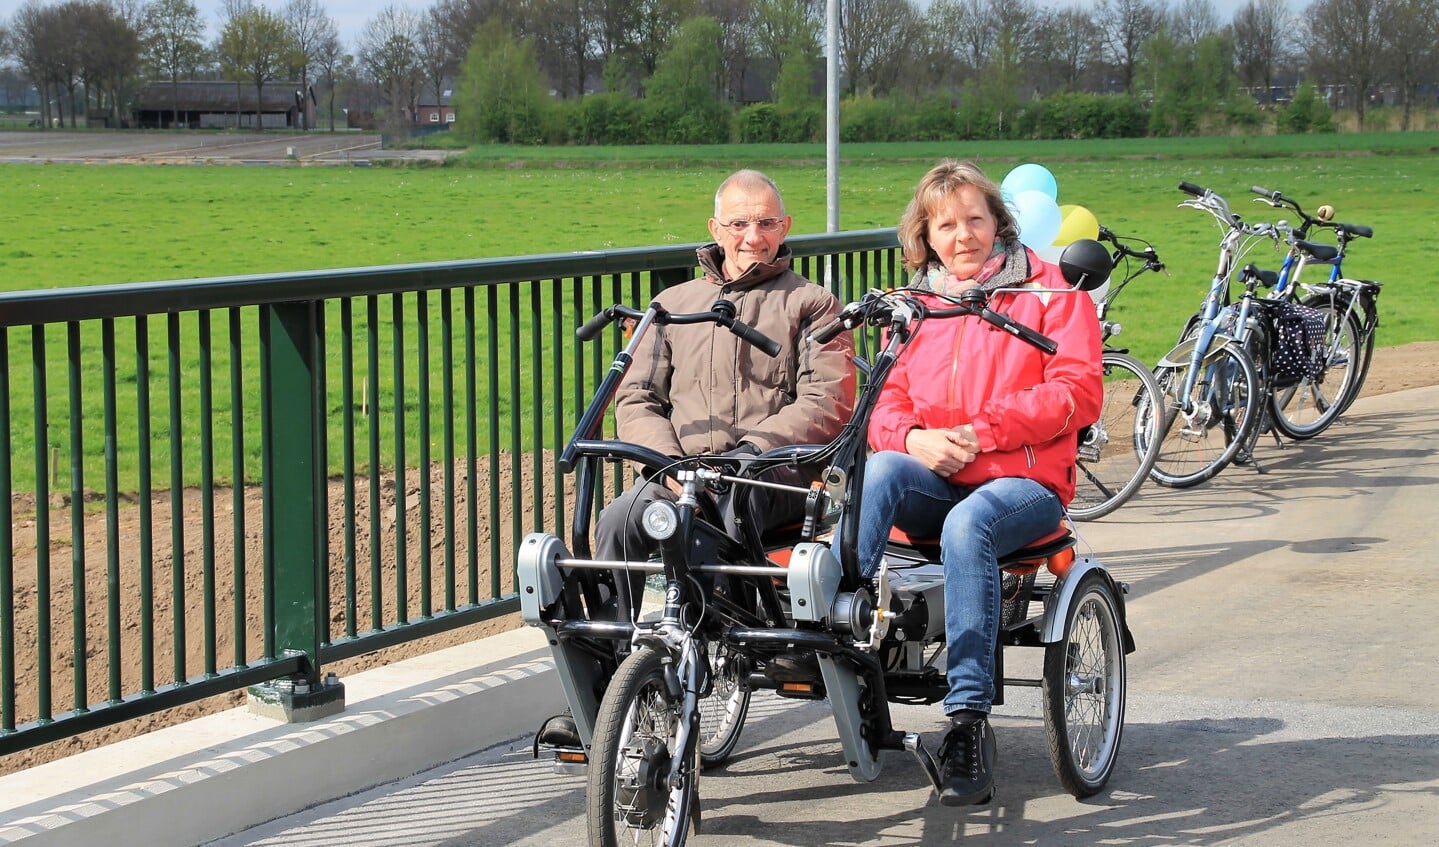 Cor van den Acker en Anita van den Akker mochten als eerste de brug over fietsen. 